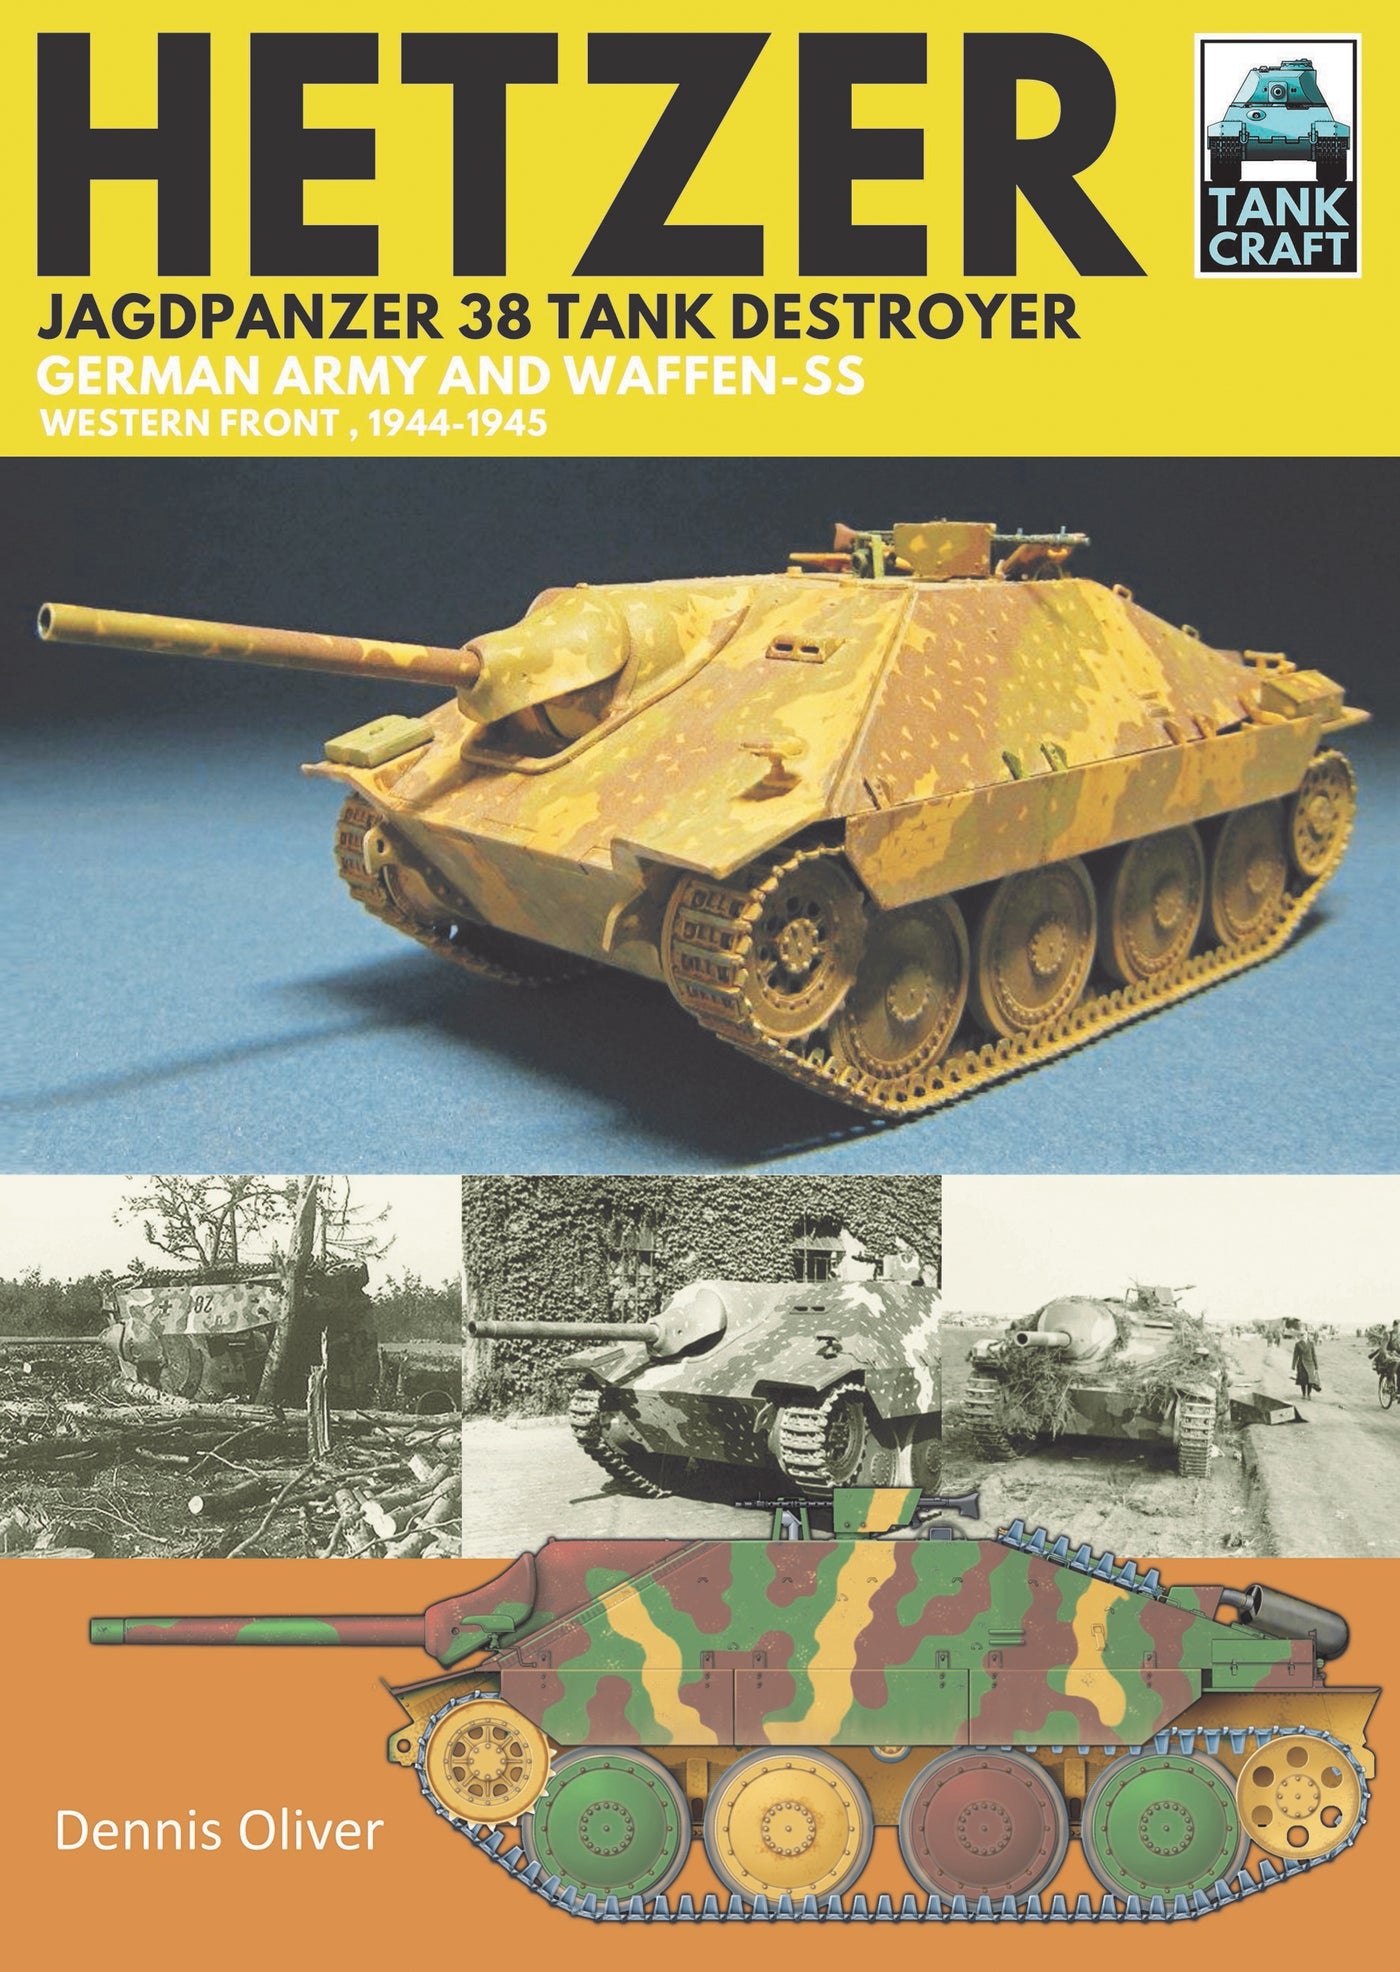 Hetzer - Jagdpanzer 38 Tank Destroyer